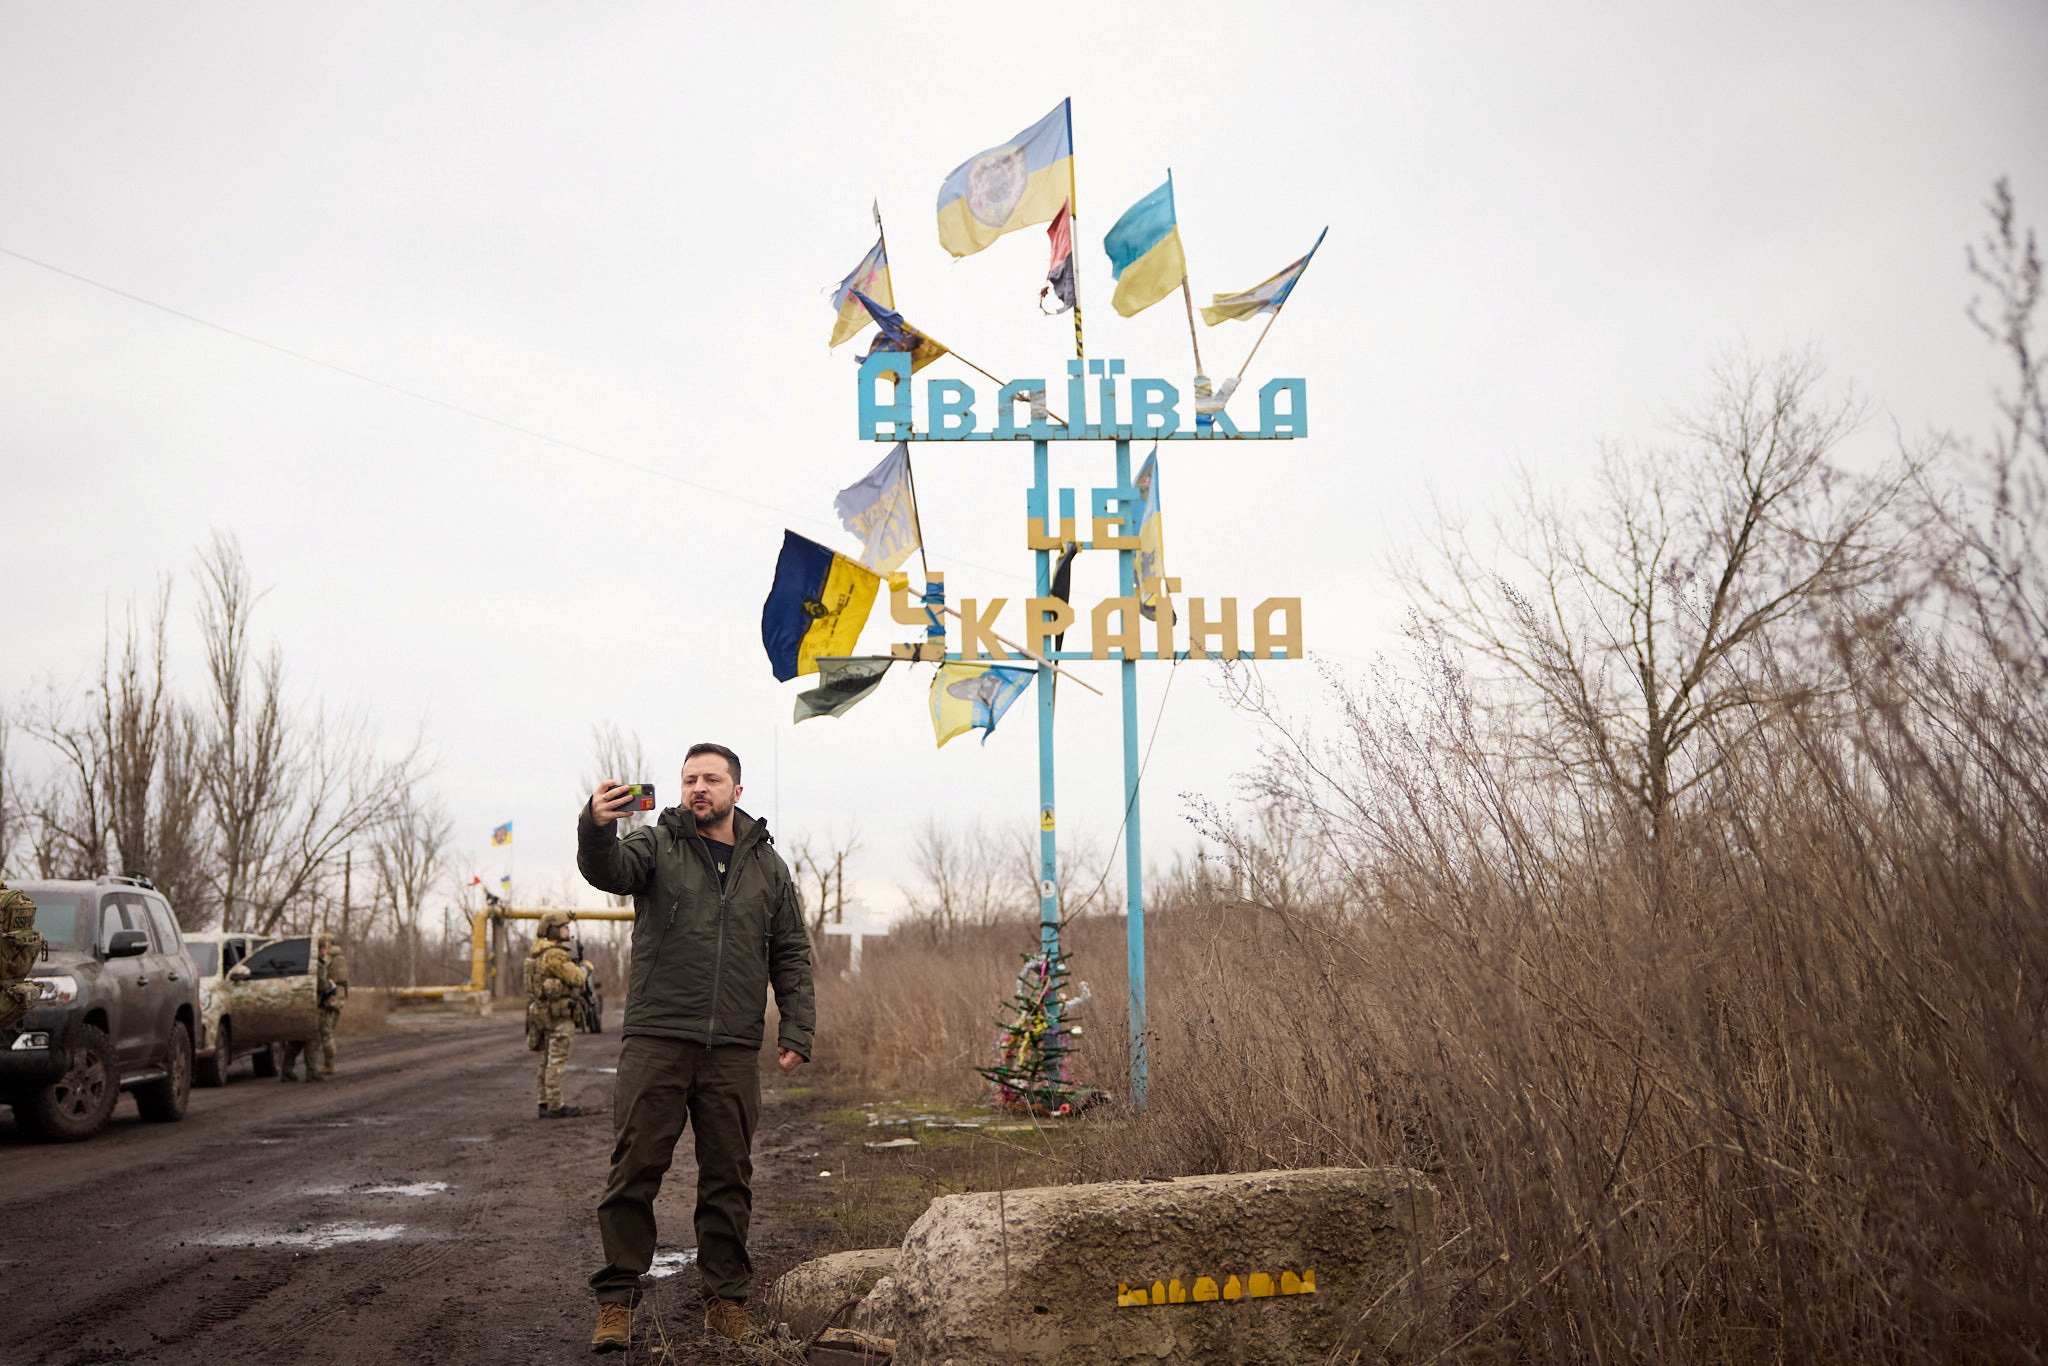 Ουκρανία: Προετοιμασίες για έναν πόλεμο που θα διαρκέσει πολύ – Αγωνία για τη στάση της Δύσης